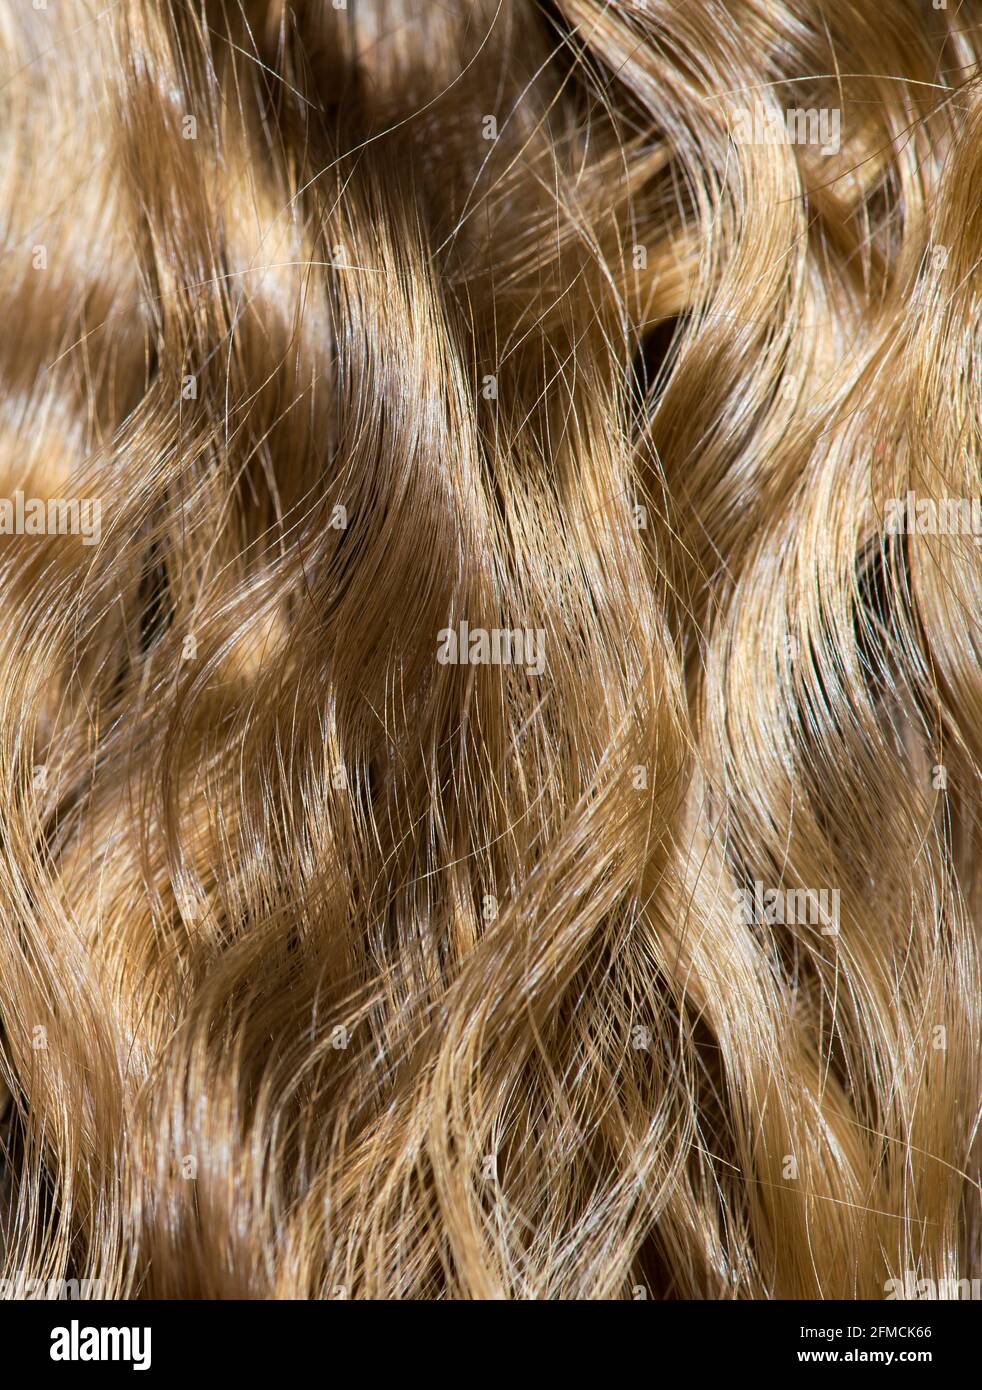 Welliges Haarfragment als Textur-Hintergrundkomposition Stockfoto